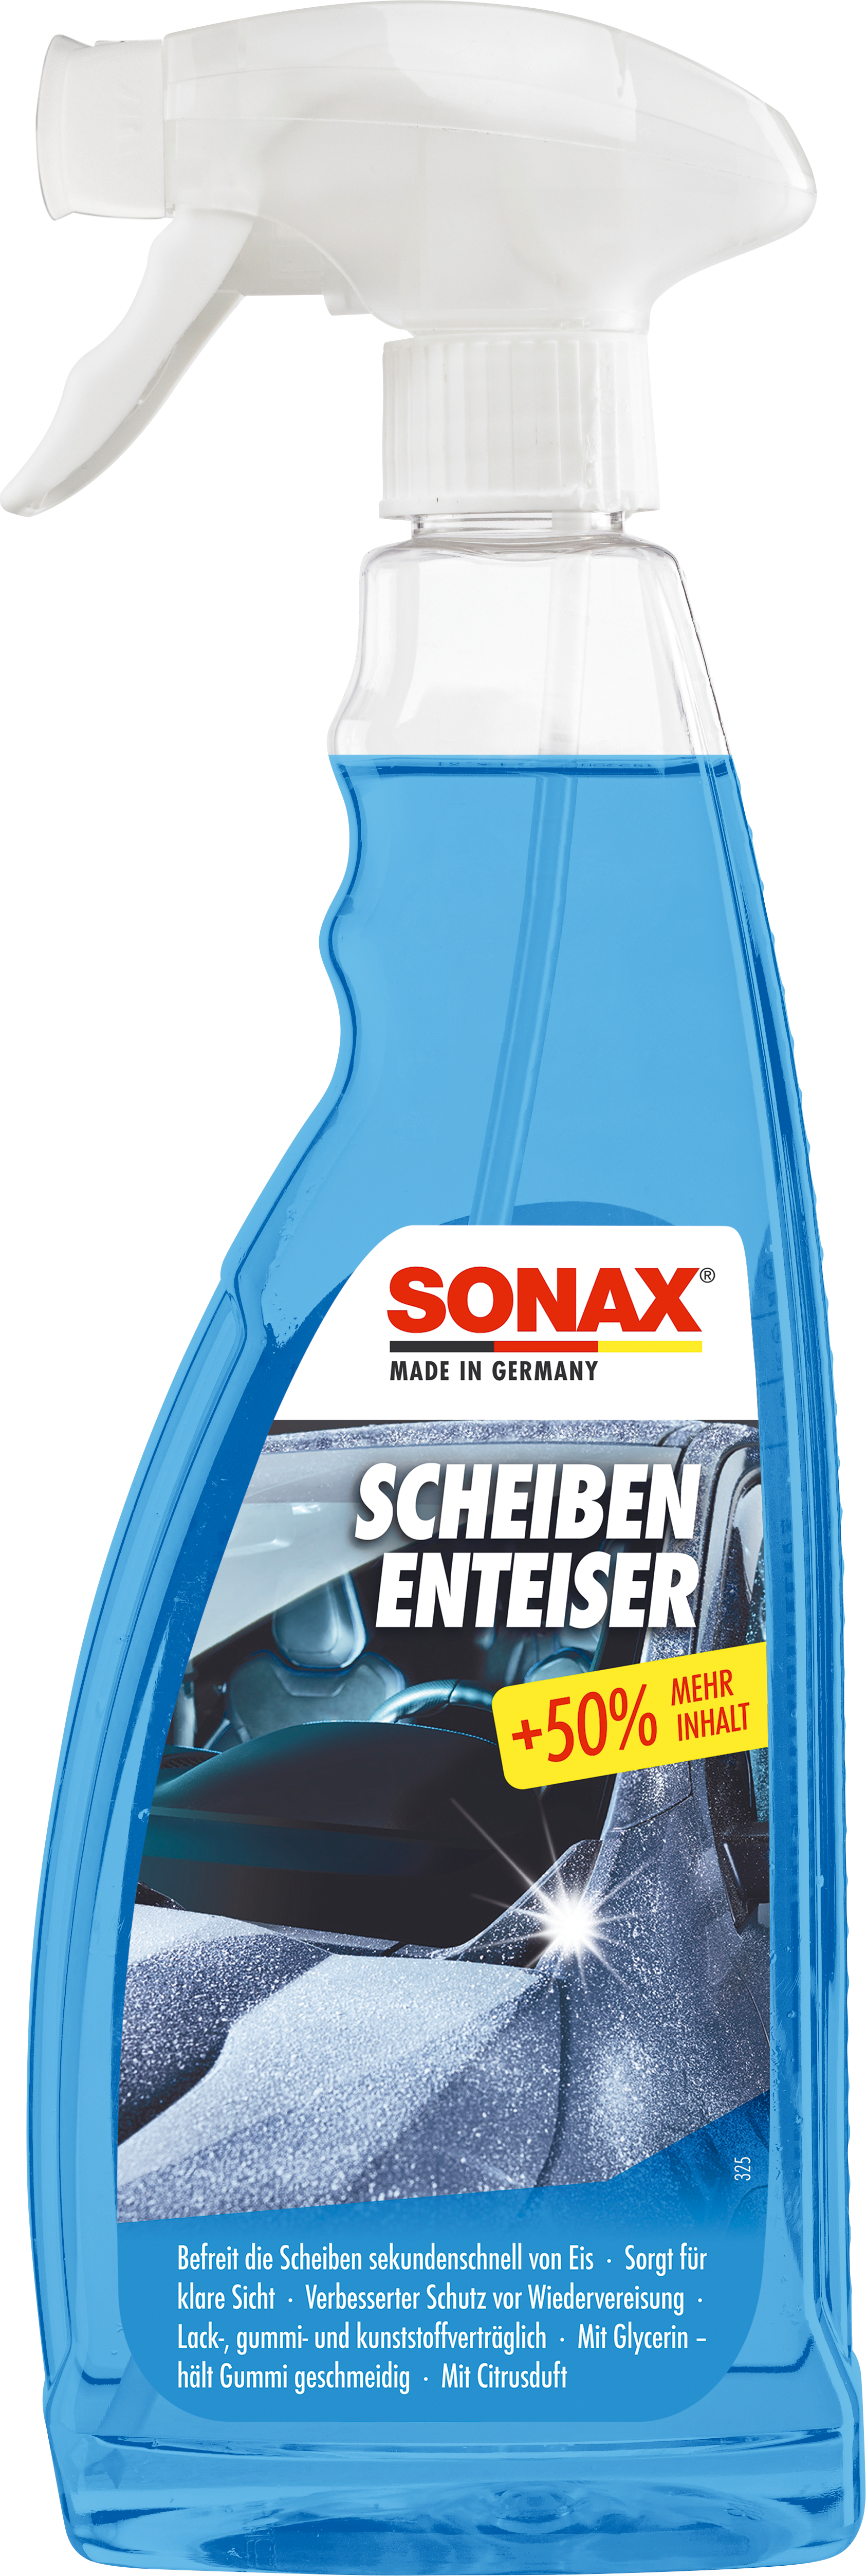 ScheibenEnteiser - Sonax-AT